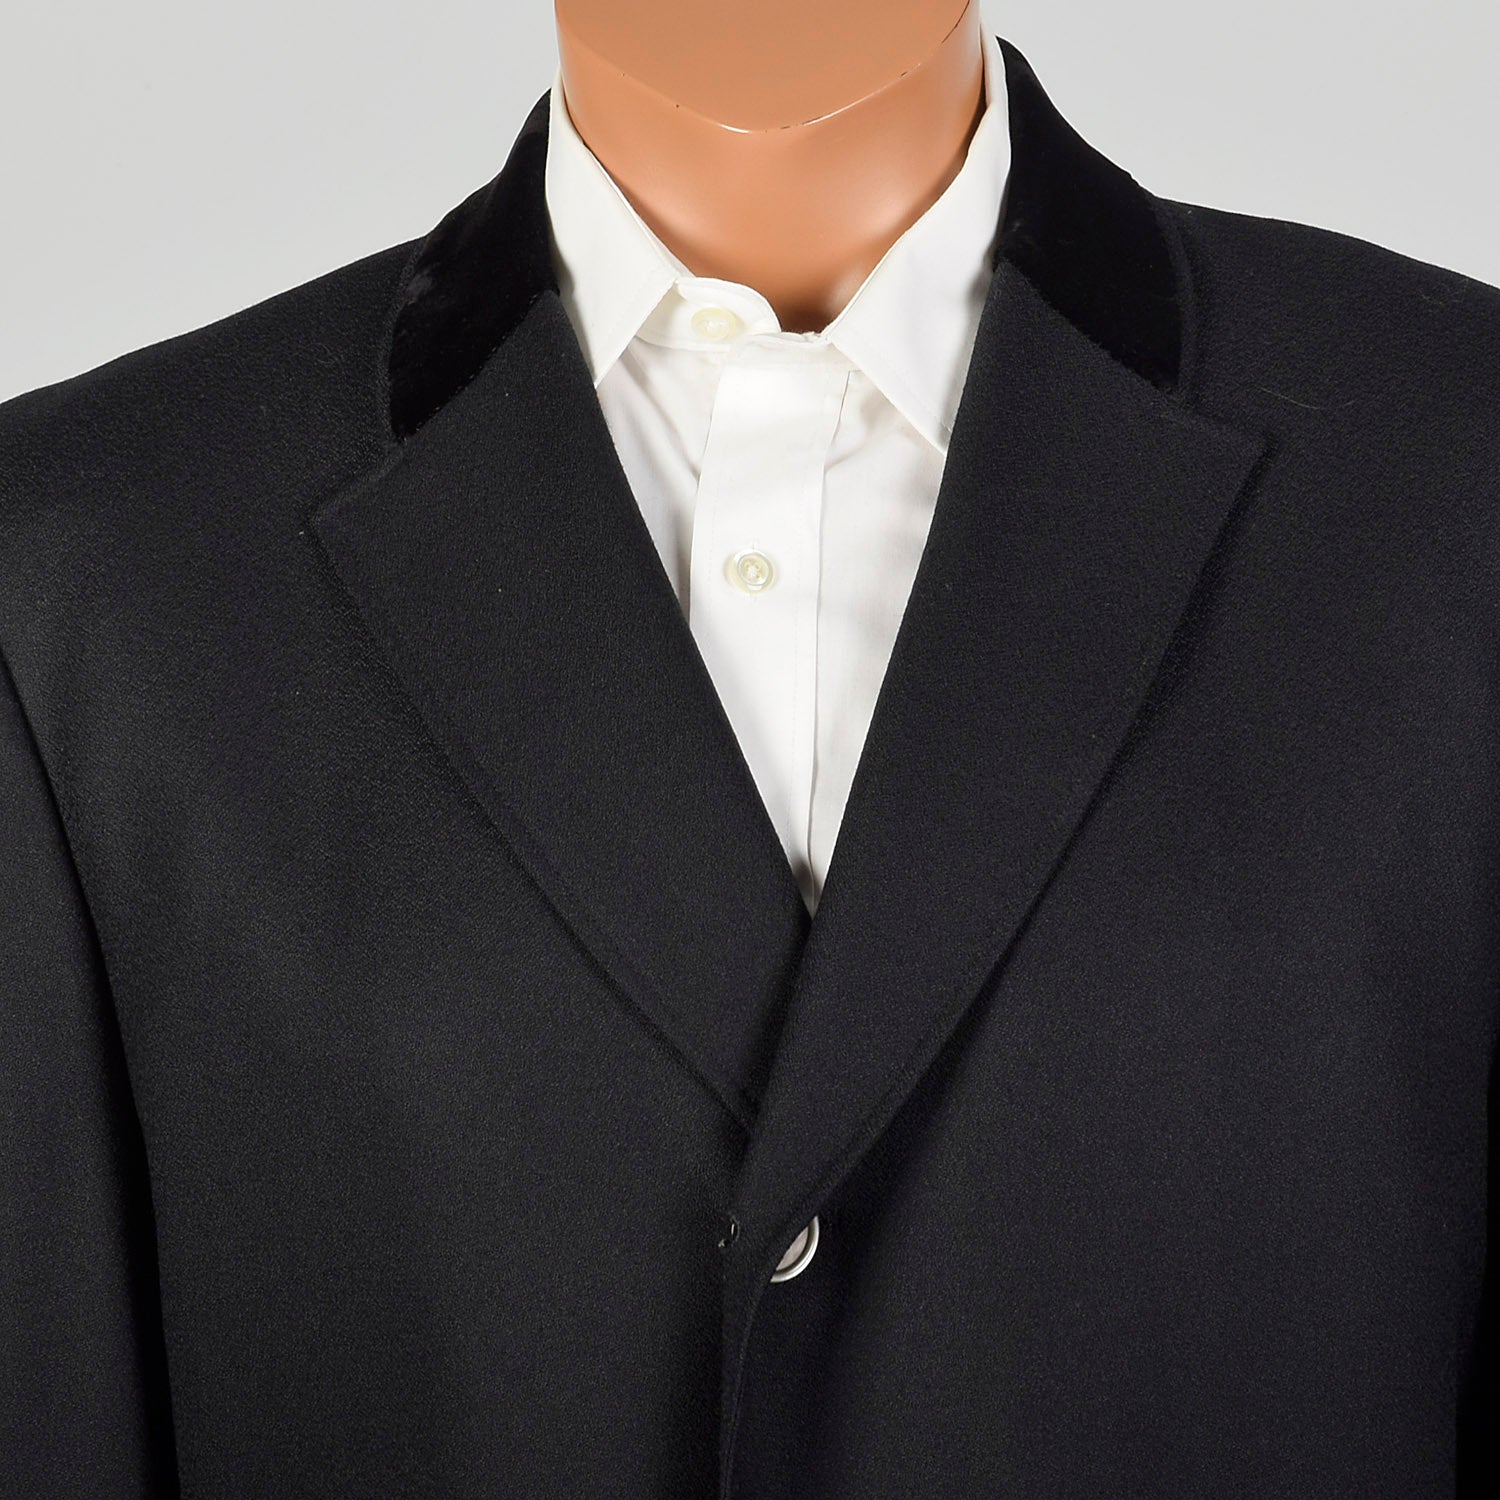 Medium-Large 1950s Black Top Coat